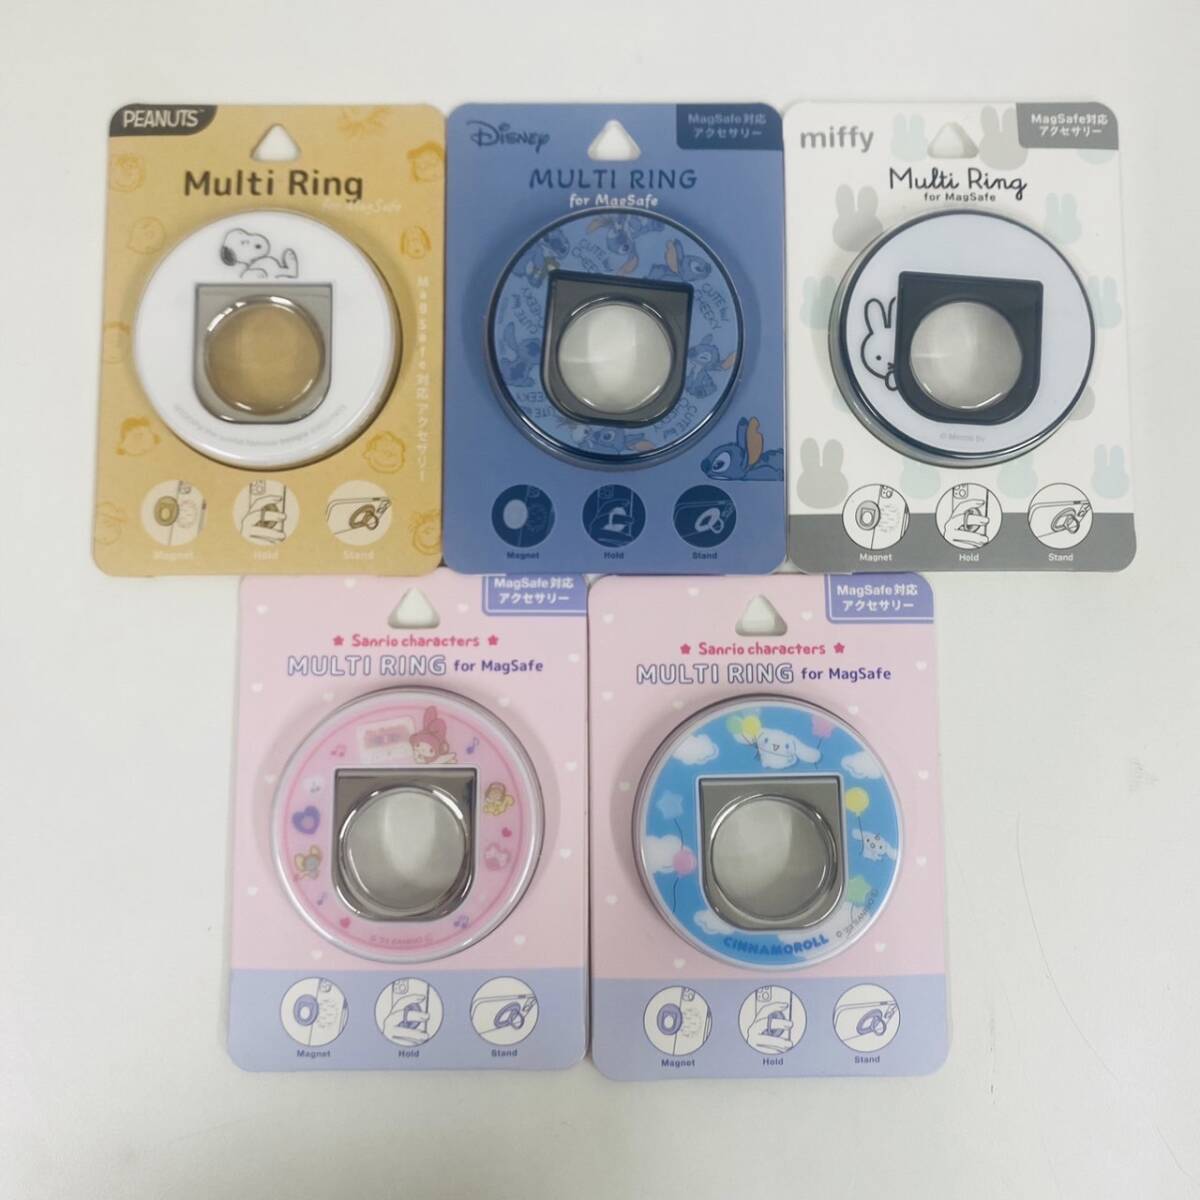 [TK-13603IM]1 иен ~ Magsafe соответствует магнит тип смартфон кольцо смартфон iPhone соответствует Sanrio товары герой . суммировать 